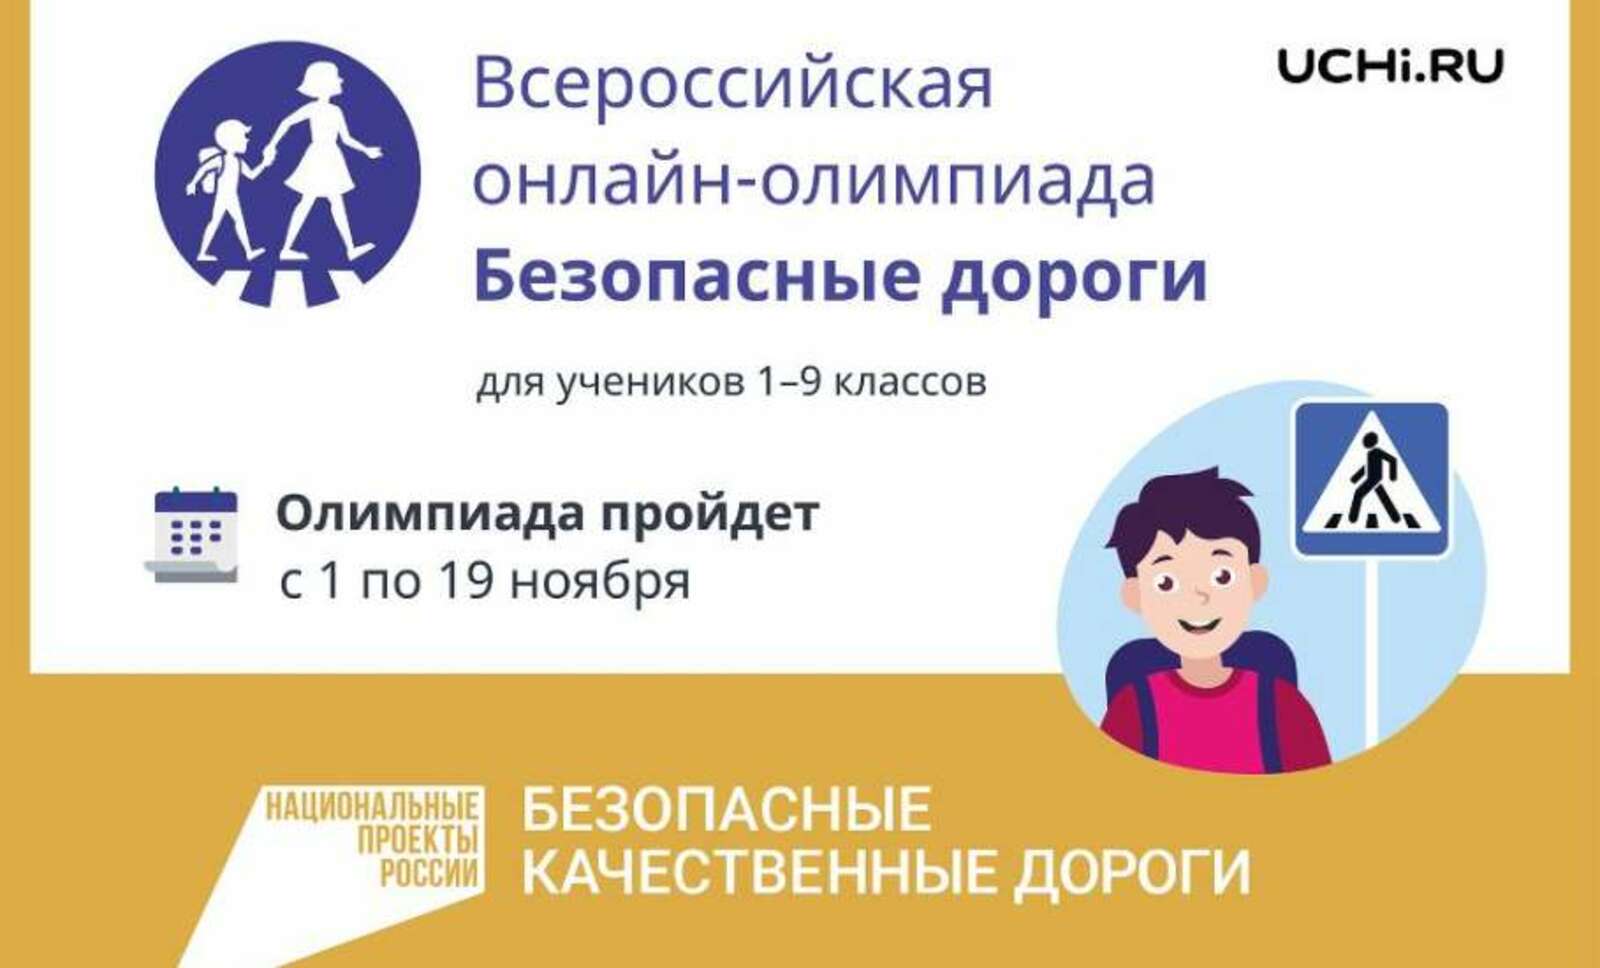 Школьники Башкортостана могут принять участие во Всероссийской онлайн-олимпиаде «Безопасные дороги»